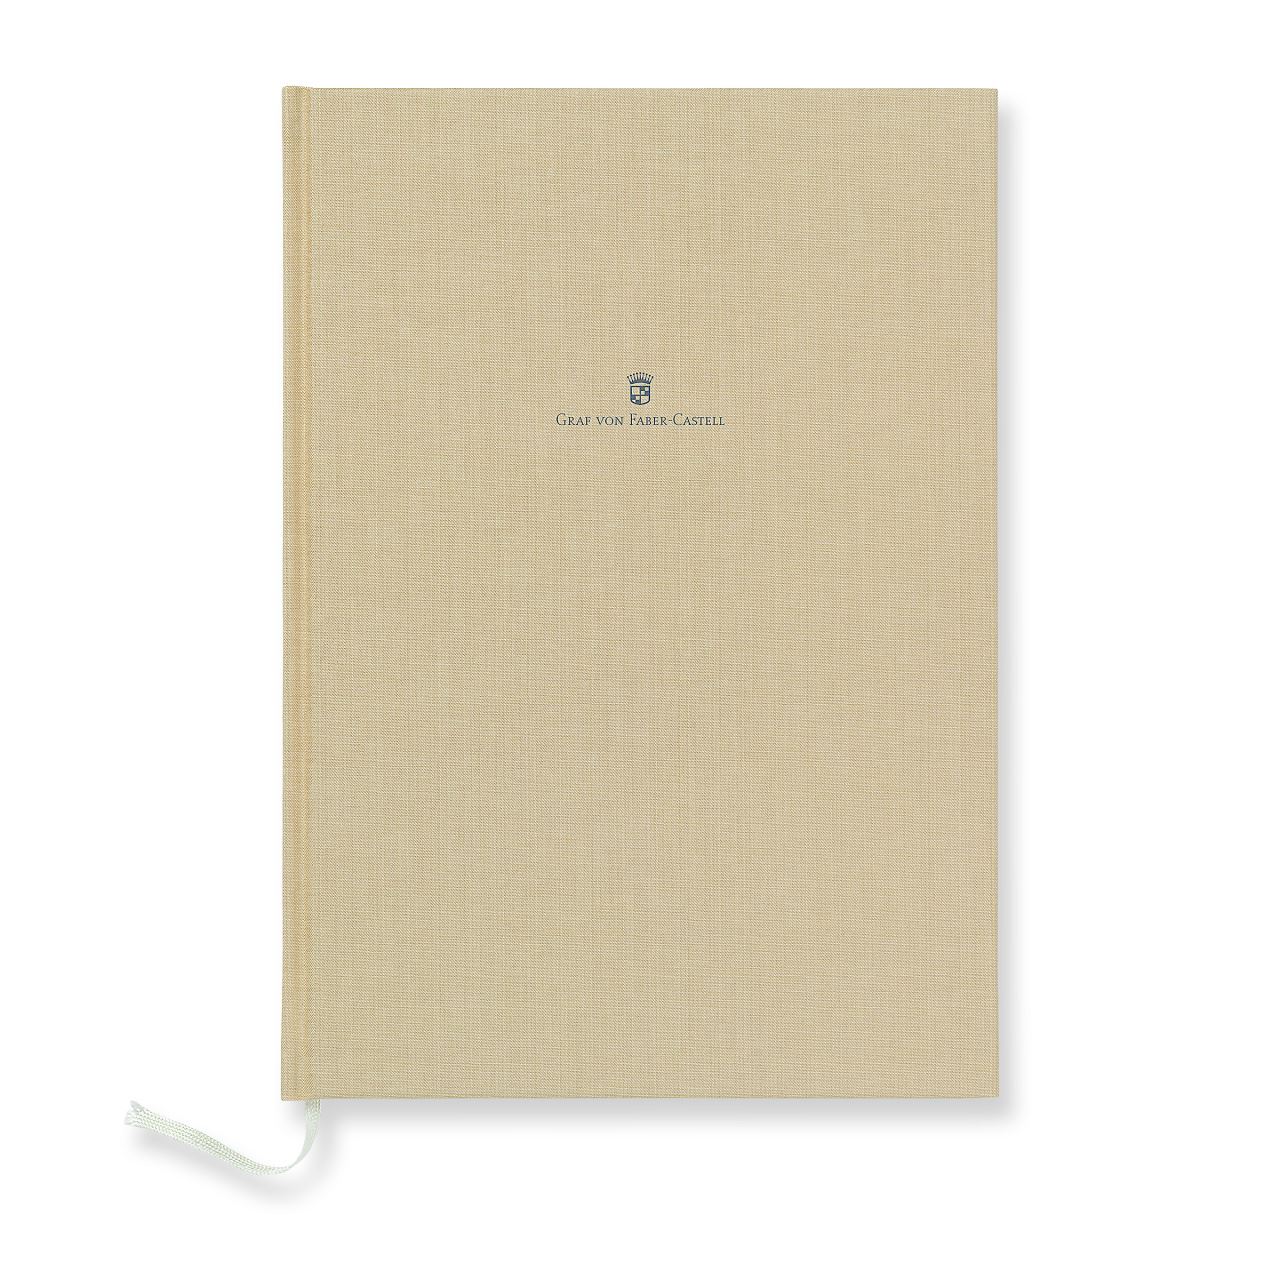 Graf-von-Faber-Castell - Book con copertina in lino formato A4, sabbia